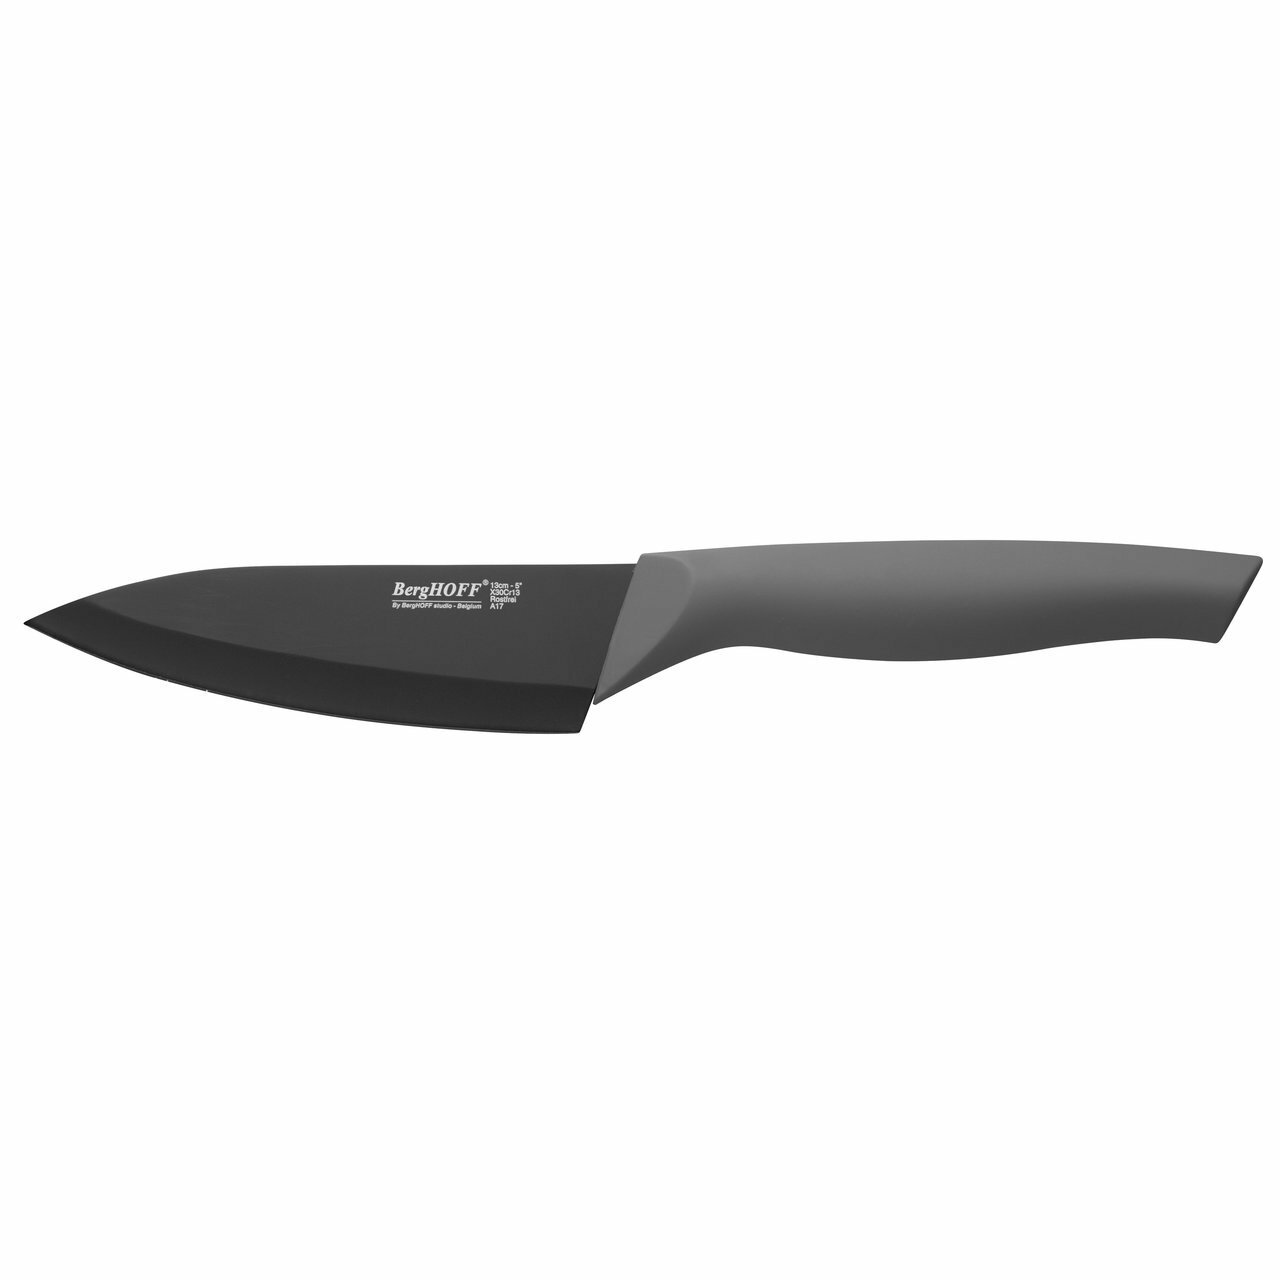 Поварской нож с покрытием BergHOFF, 13см